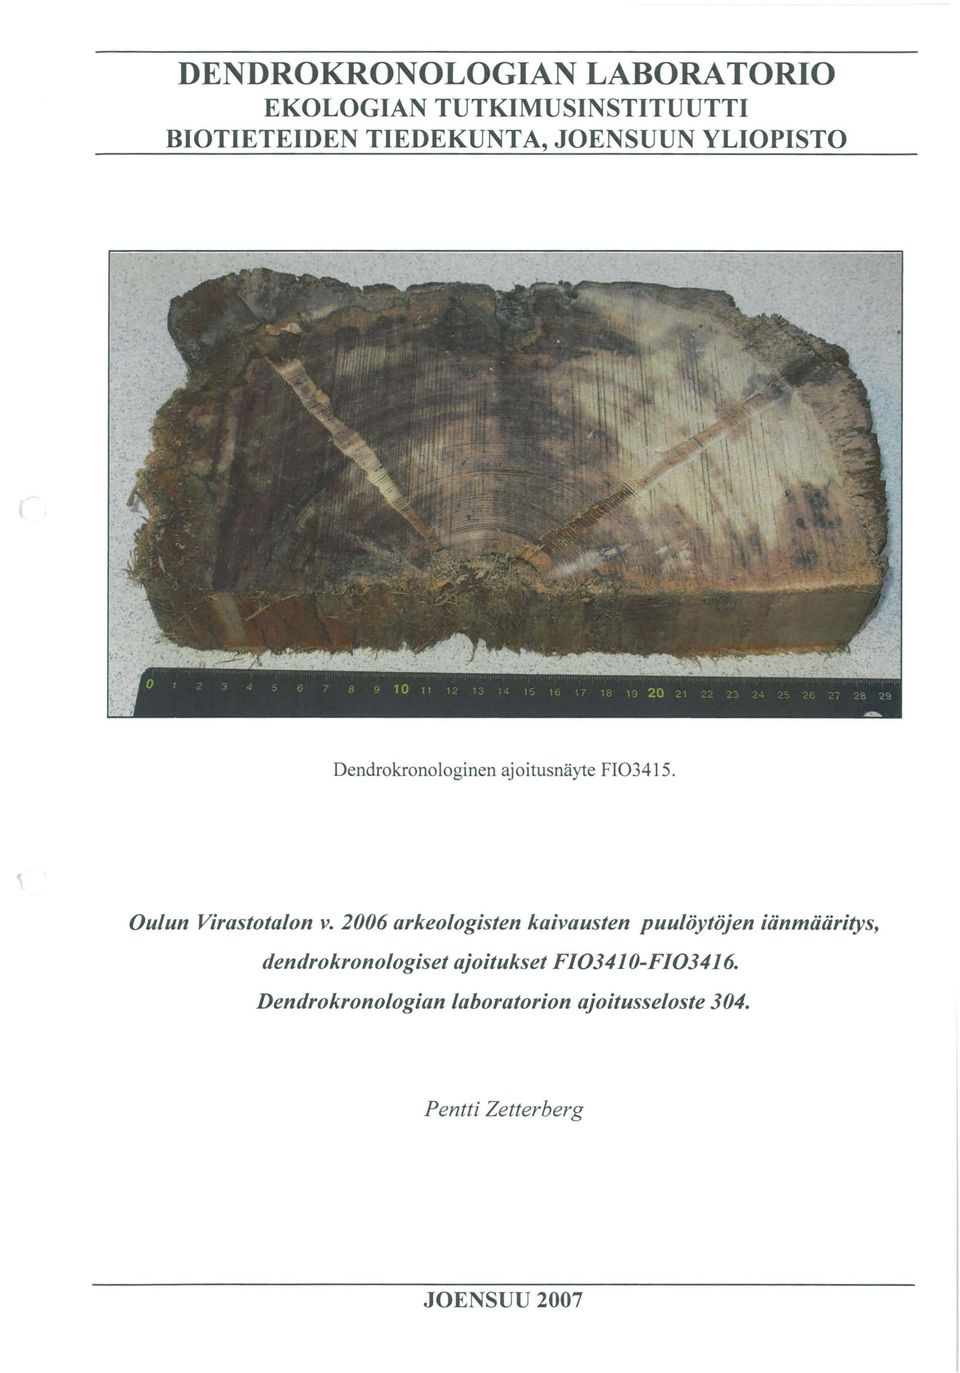 2006 arkeologisten kaivausten puulöytöjen iänmääritys, dendrokronologiset ajoitukset